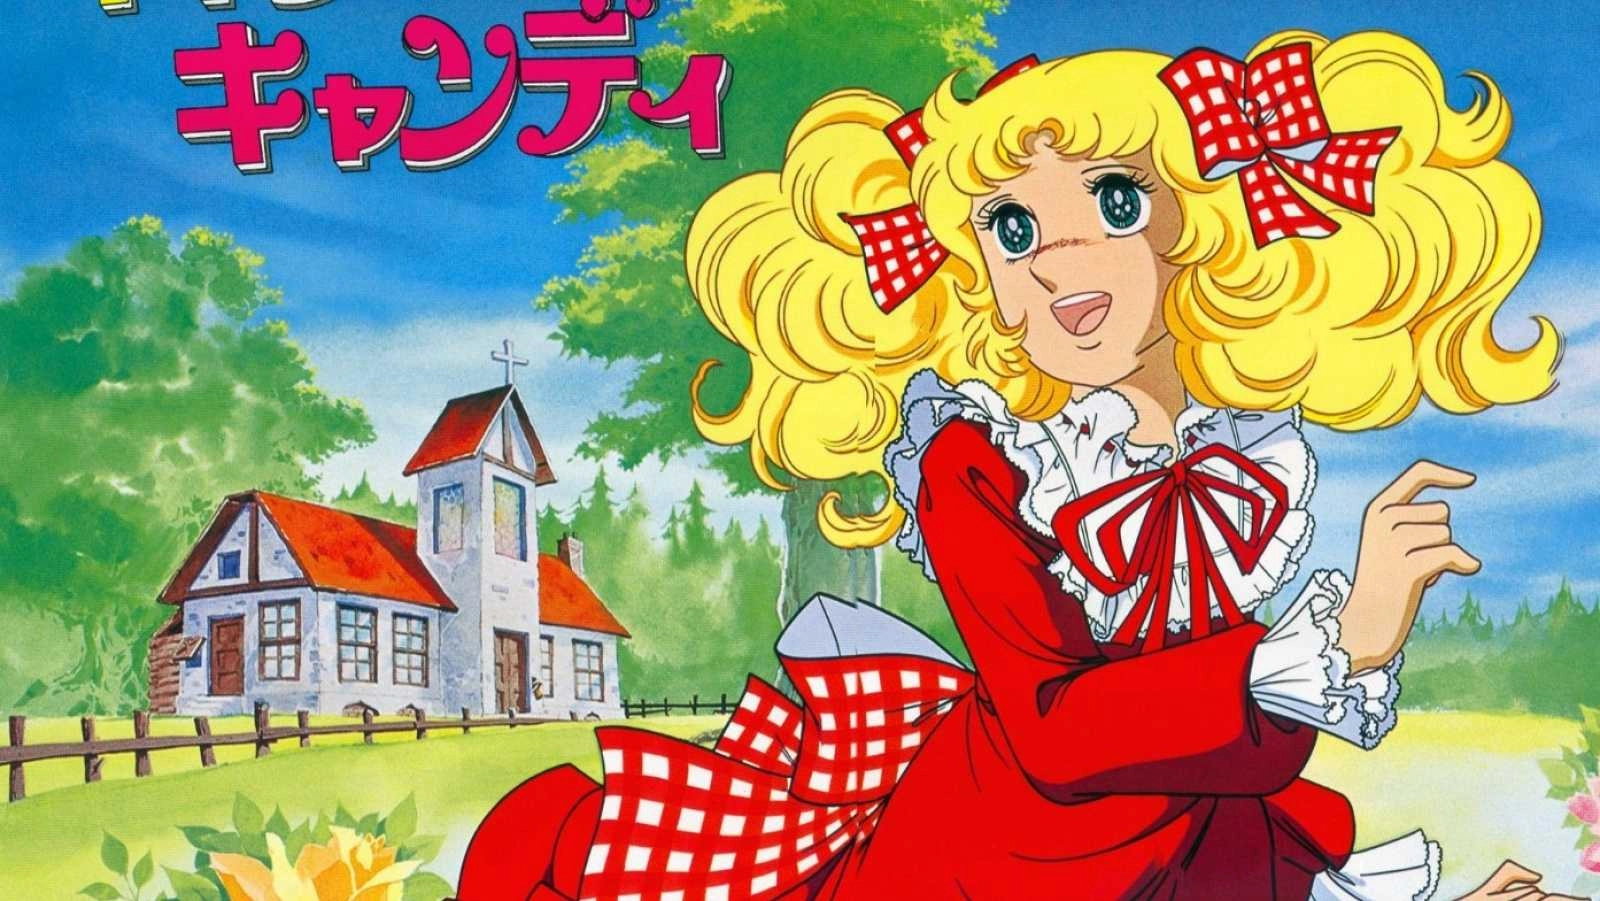 Candy Candy: La historia detrás del anime que marcó a nuestras madres - Coanime.net